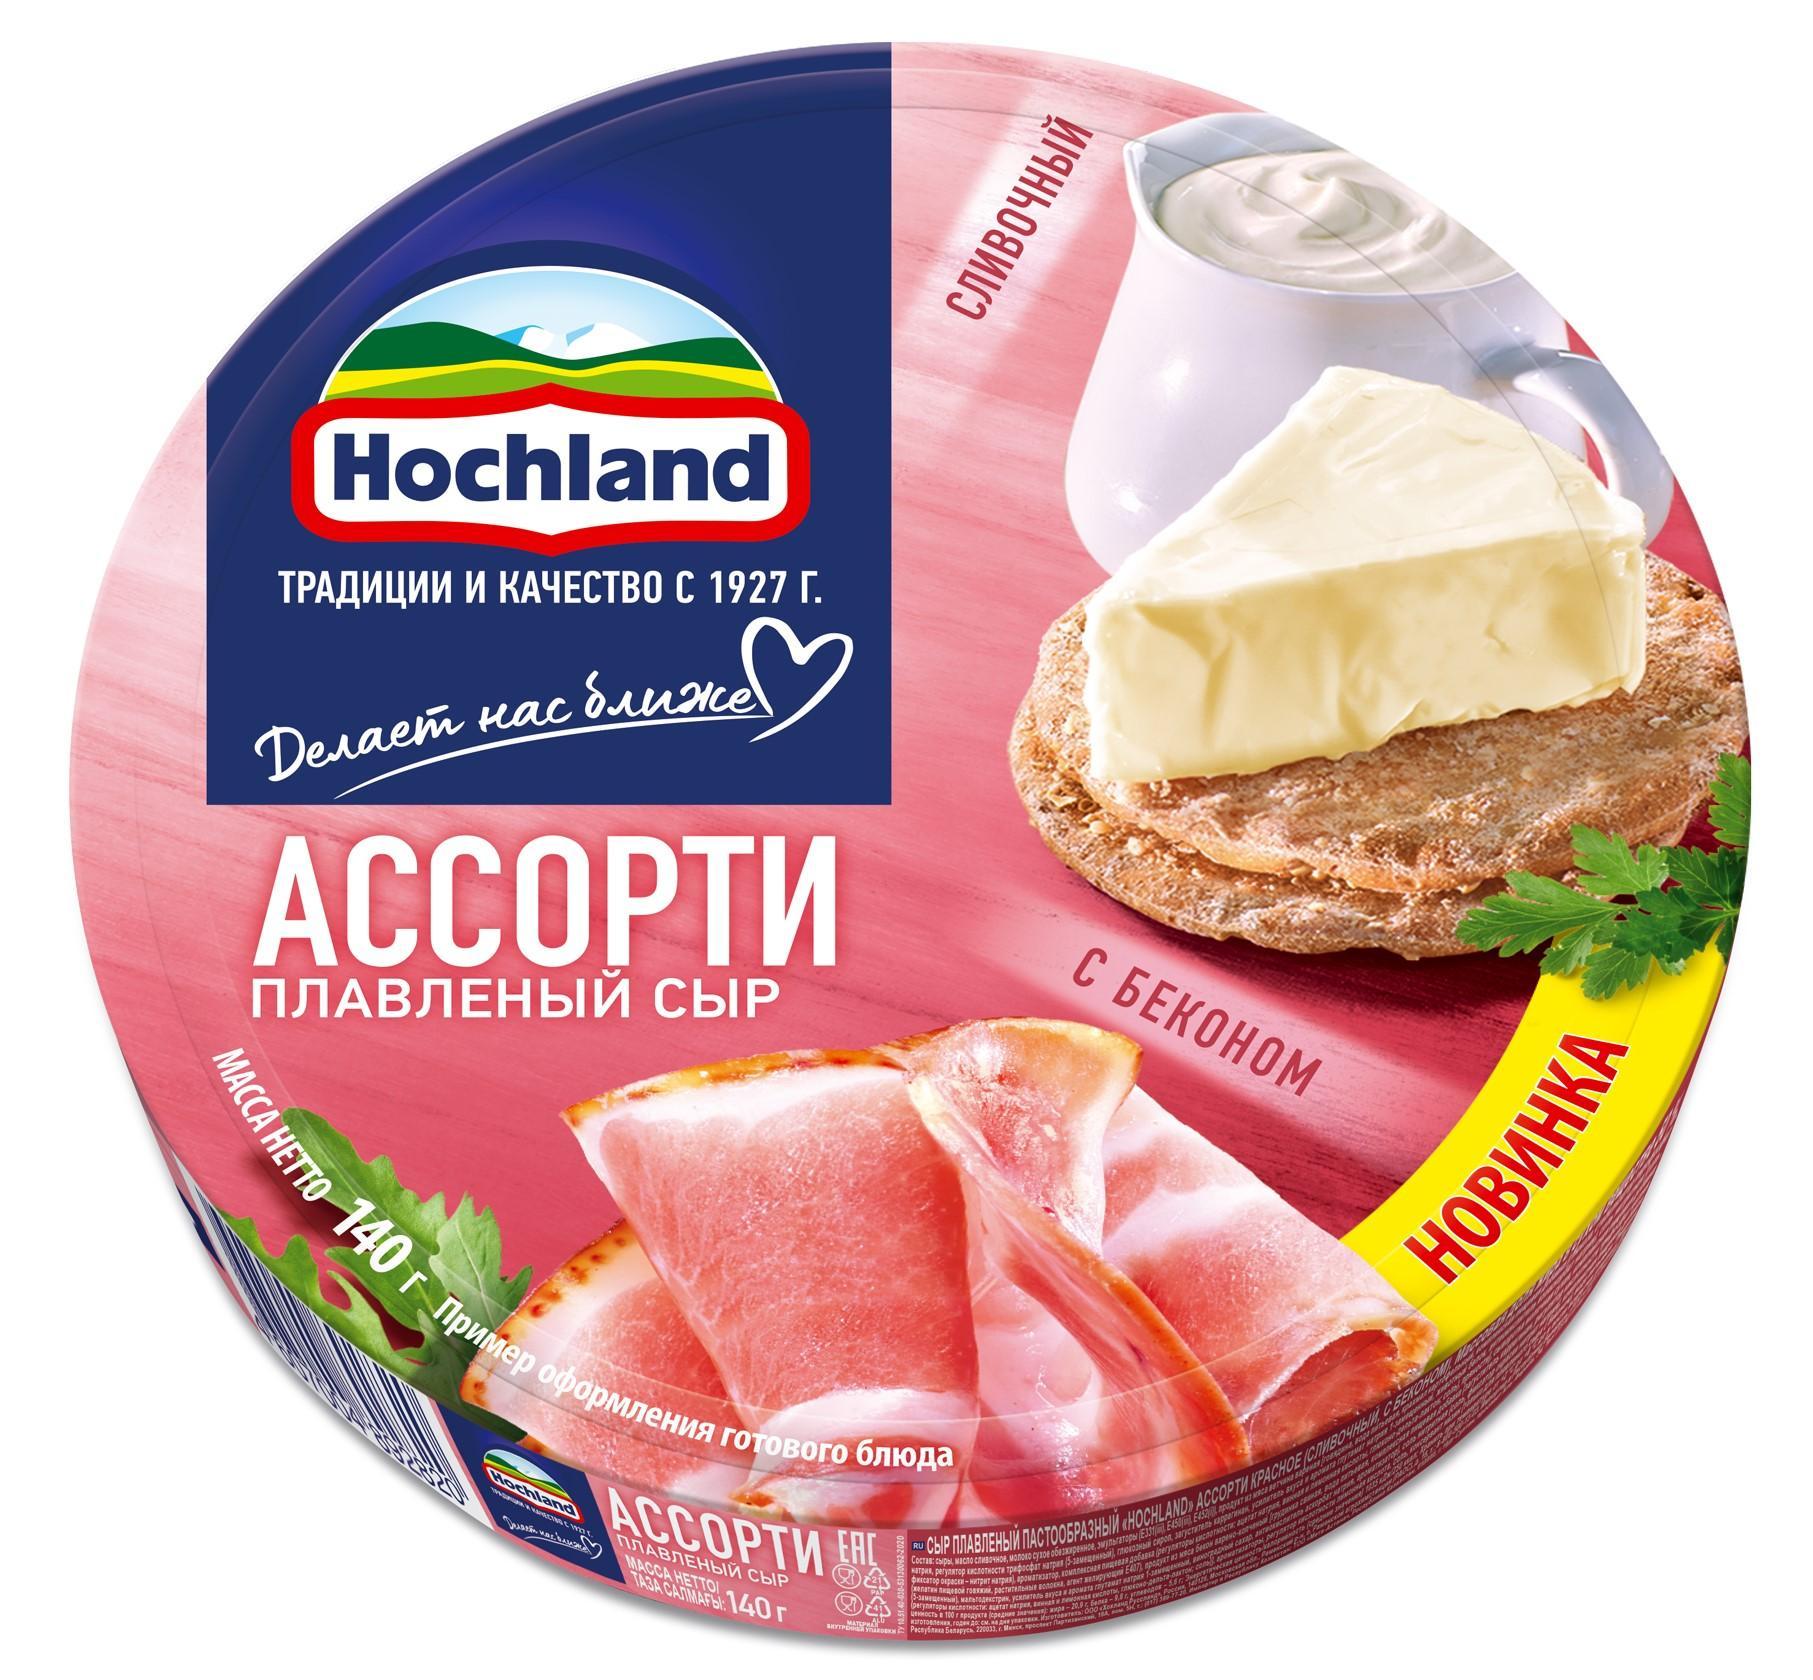 Сыр плавленый Hochland Красное ассорти: сливочный, с беконом, порционный, 50%, 140 гр., картон